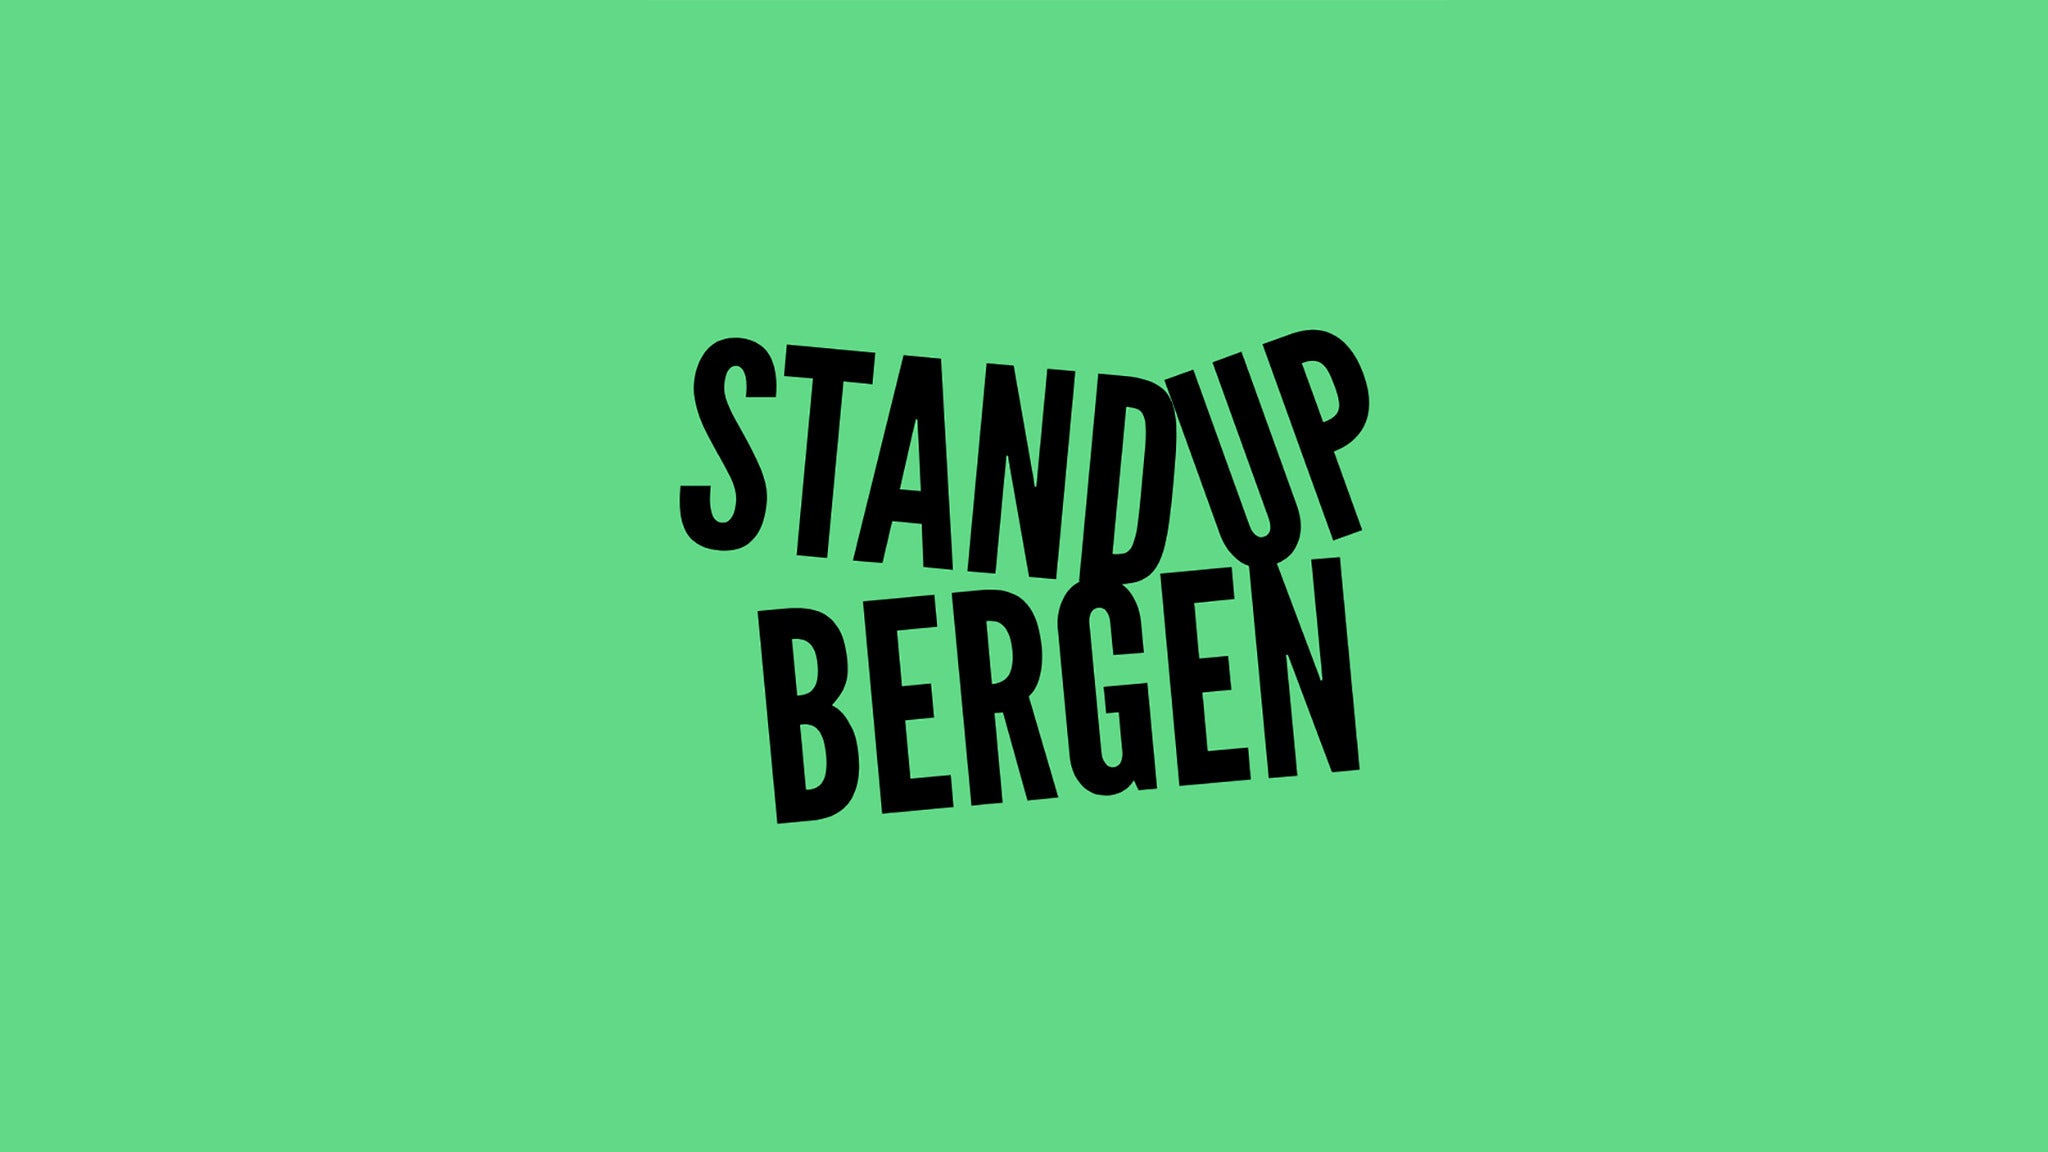 Standup Bergen presale information on freepresalepasswords.com